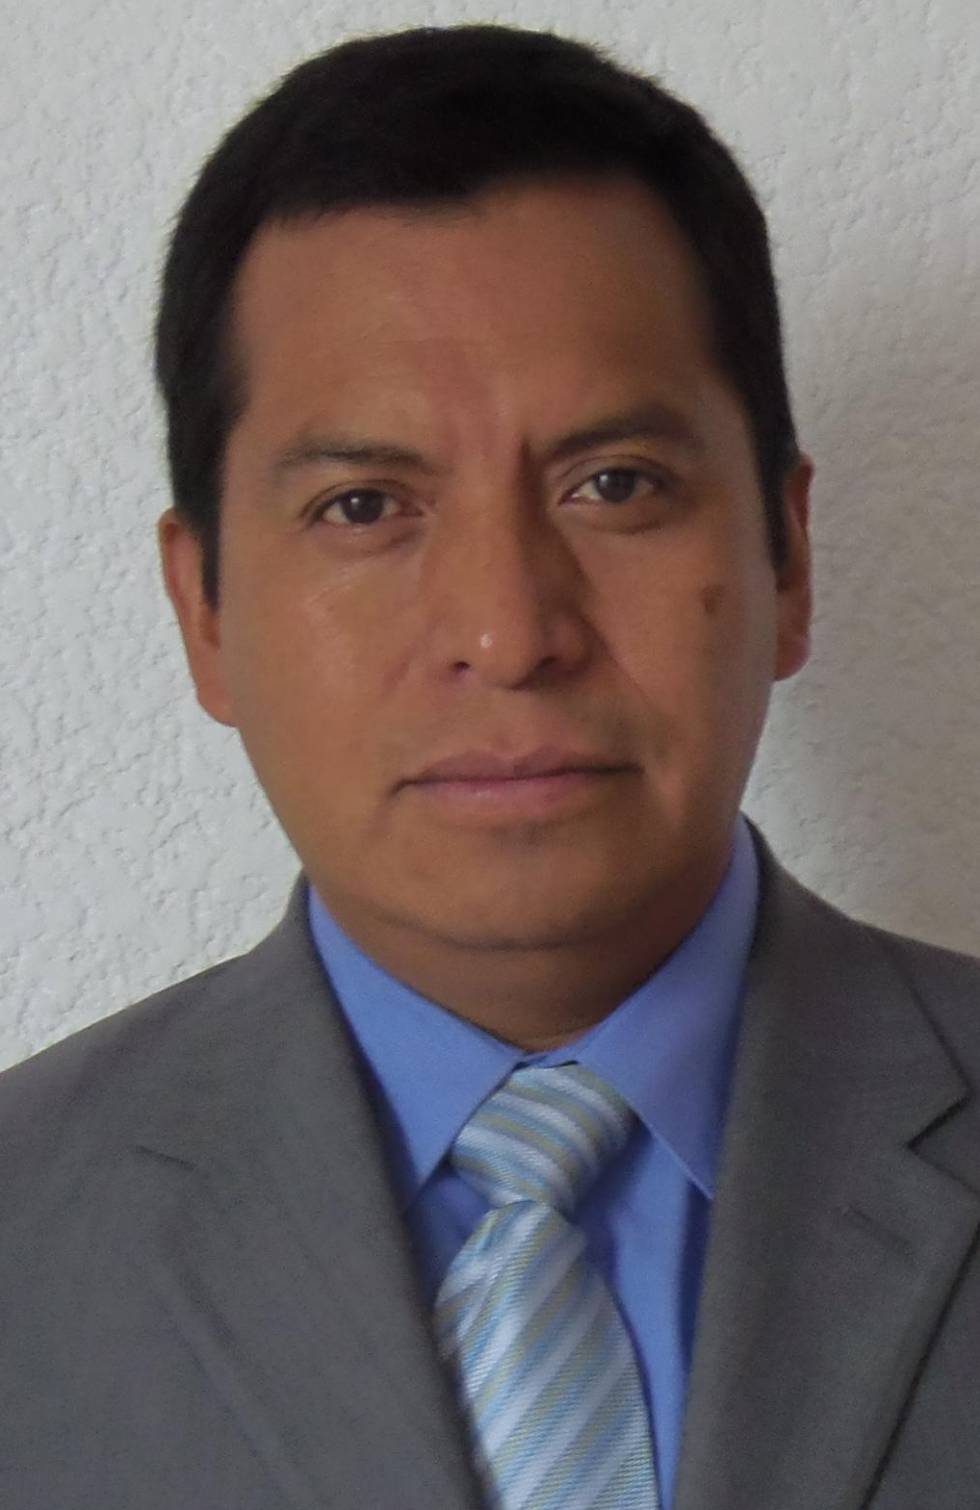 Agreden a periodista en el Estado de México